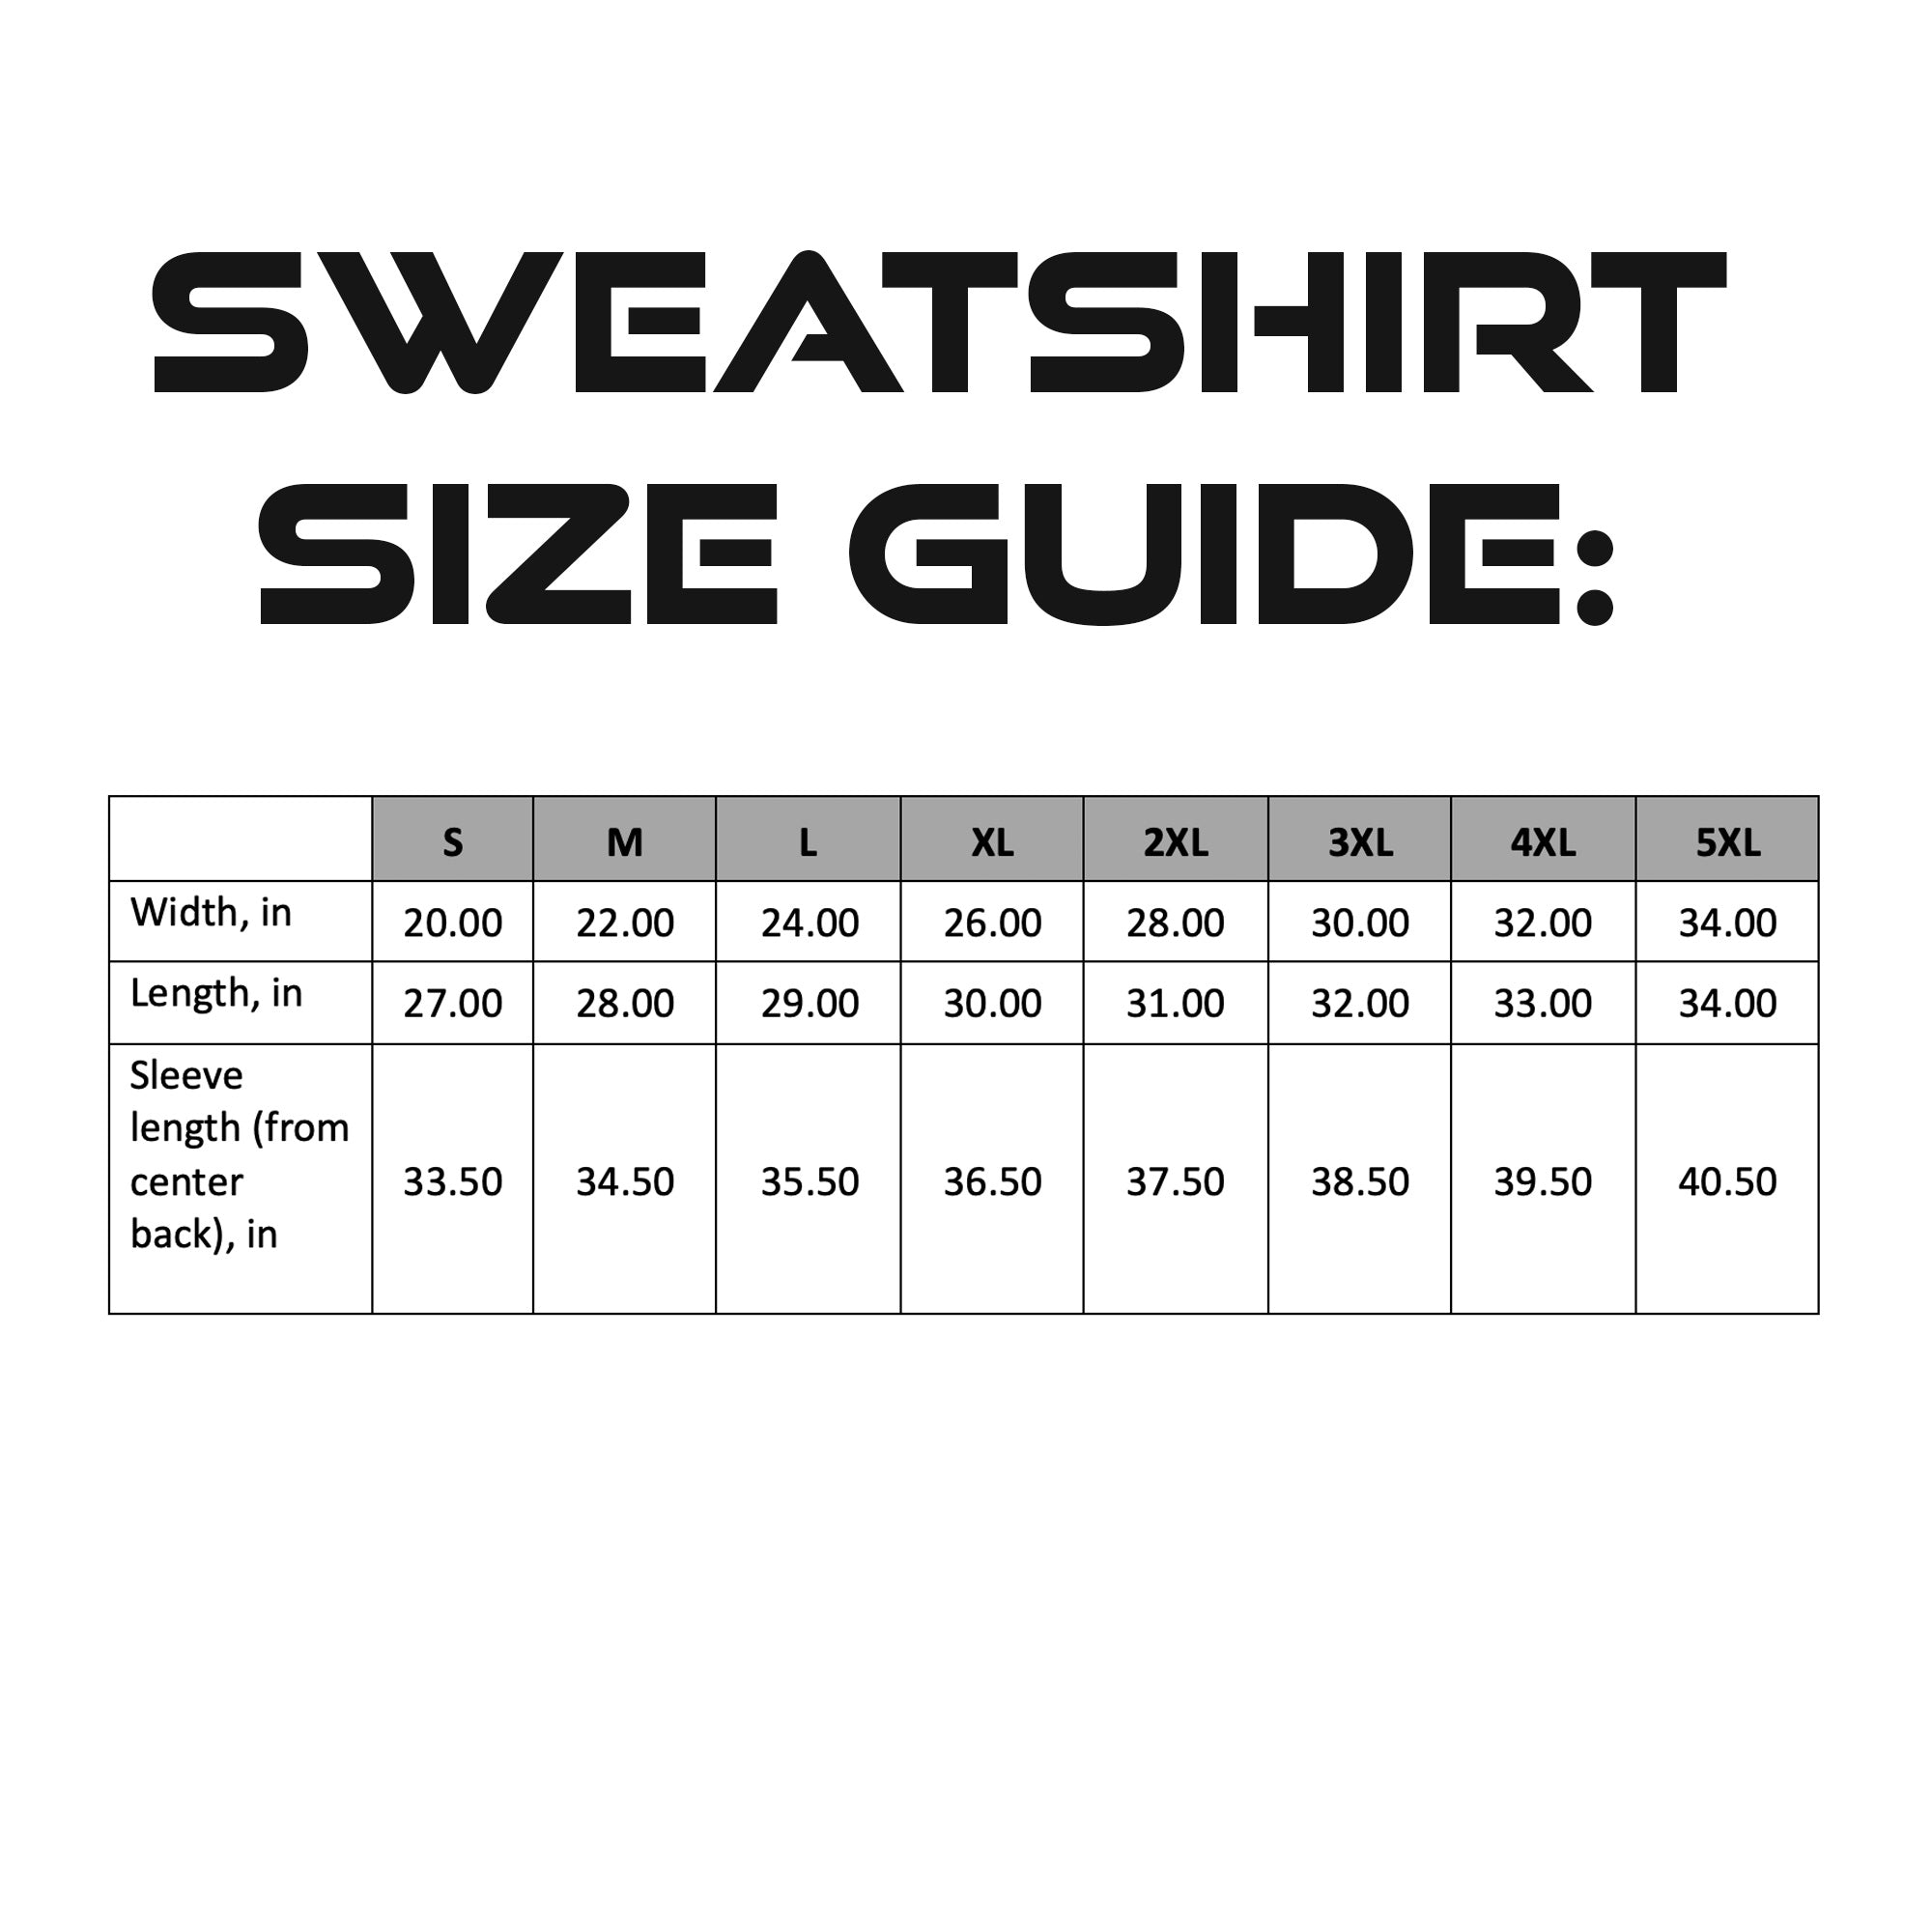 Sweatshirt Size Guide.